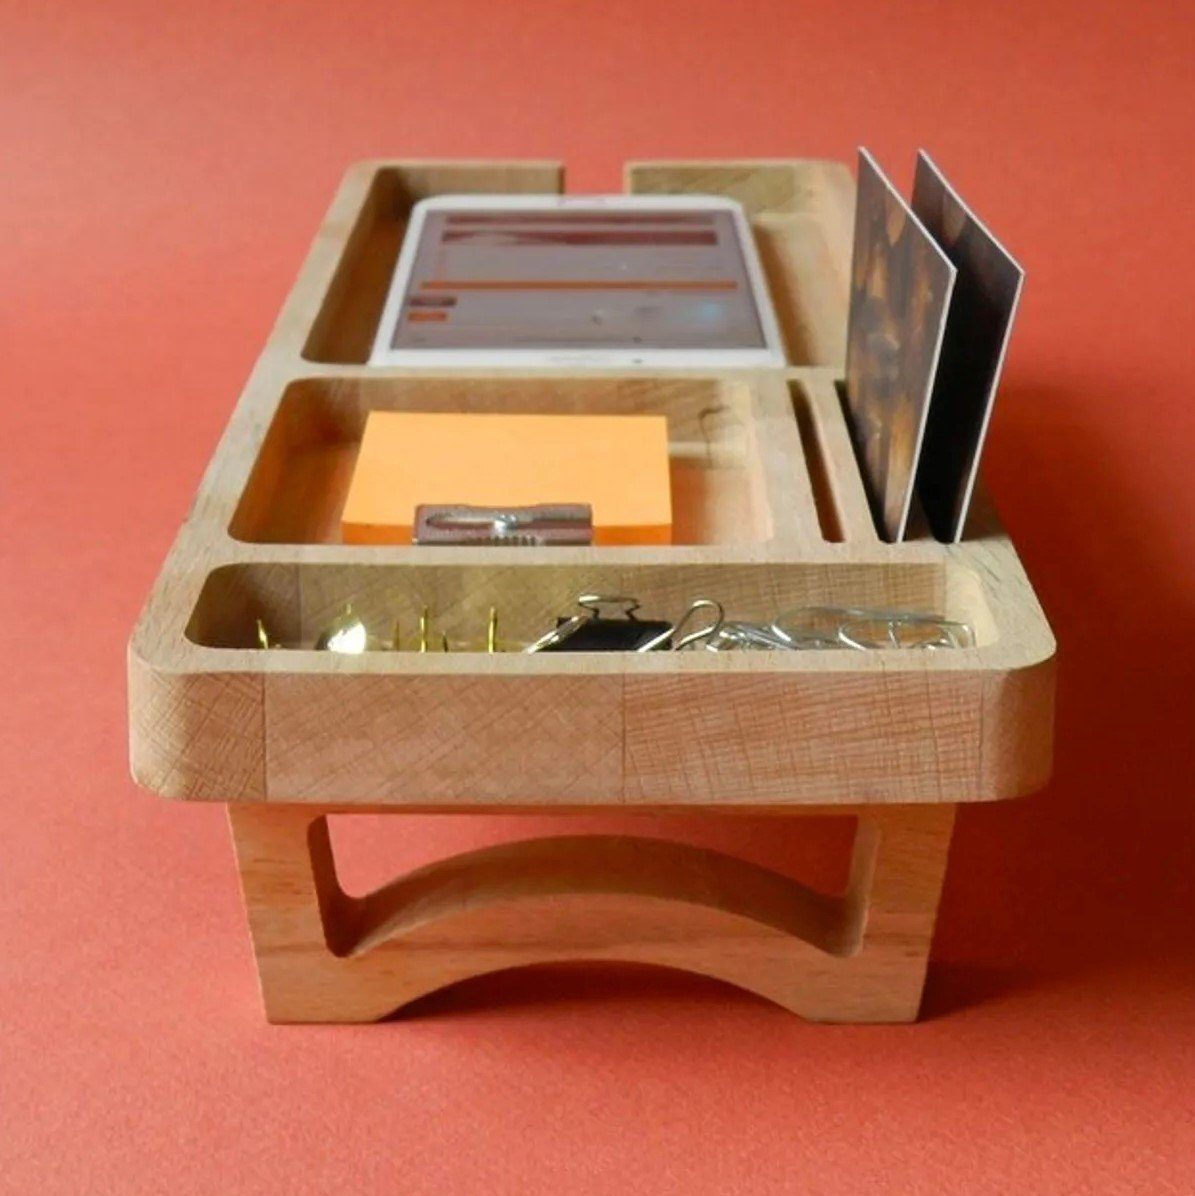 12 Holz 32 cm x Organizer, Schreibtischaufsatz - 6 Moblix Schreibtischzubehör x CATE